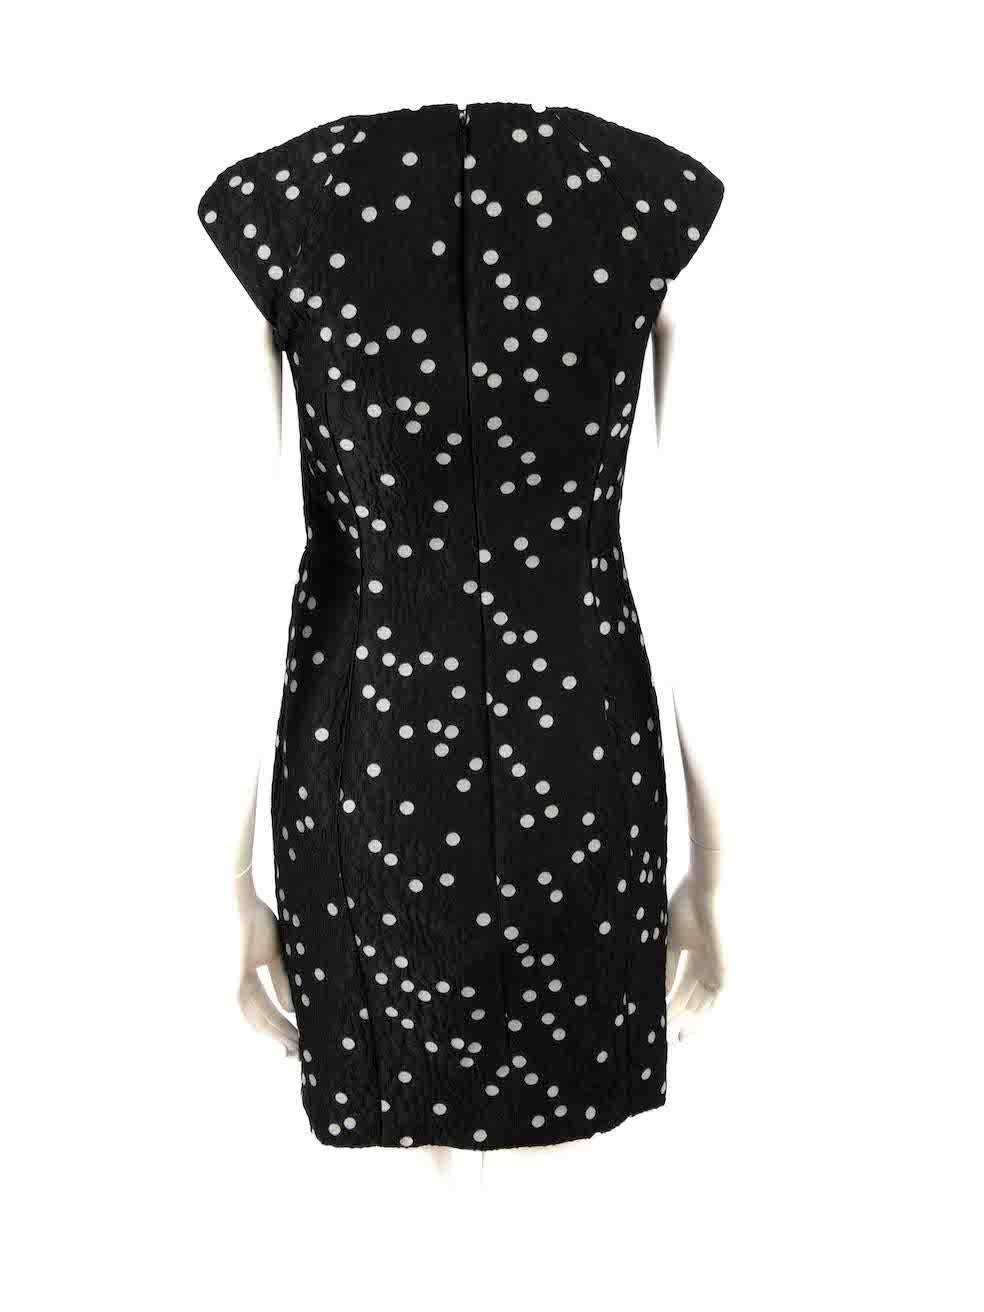 Carolina Herrera Black Polka Dot Jacquard Dress Size XS In Good Condition For Sale In London, GB